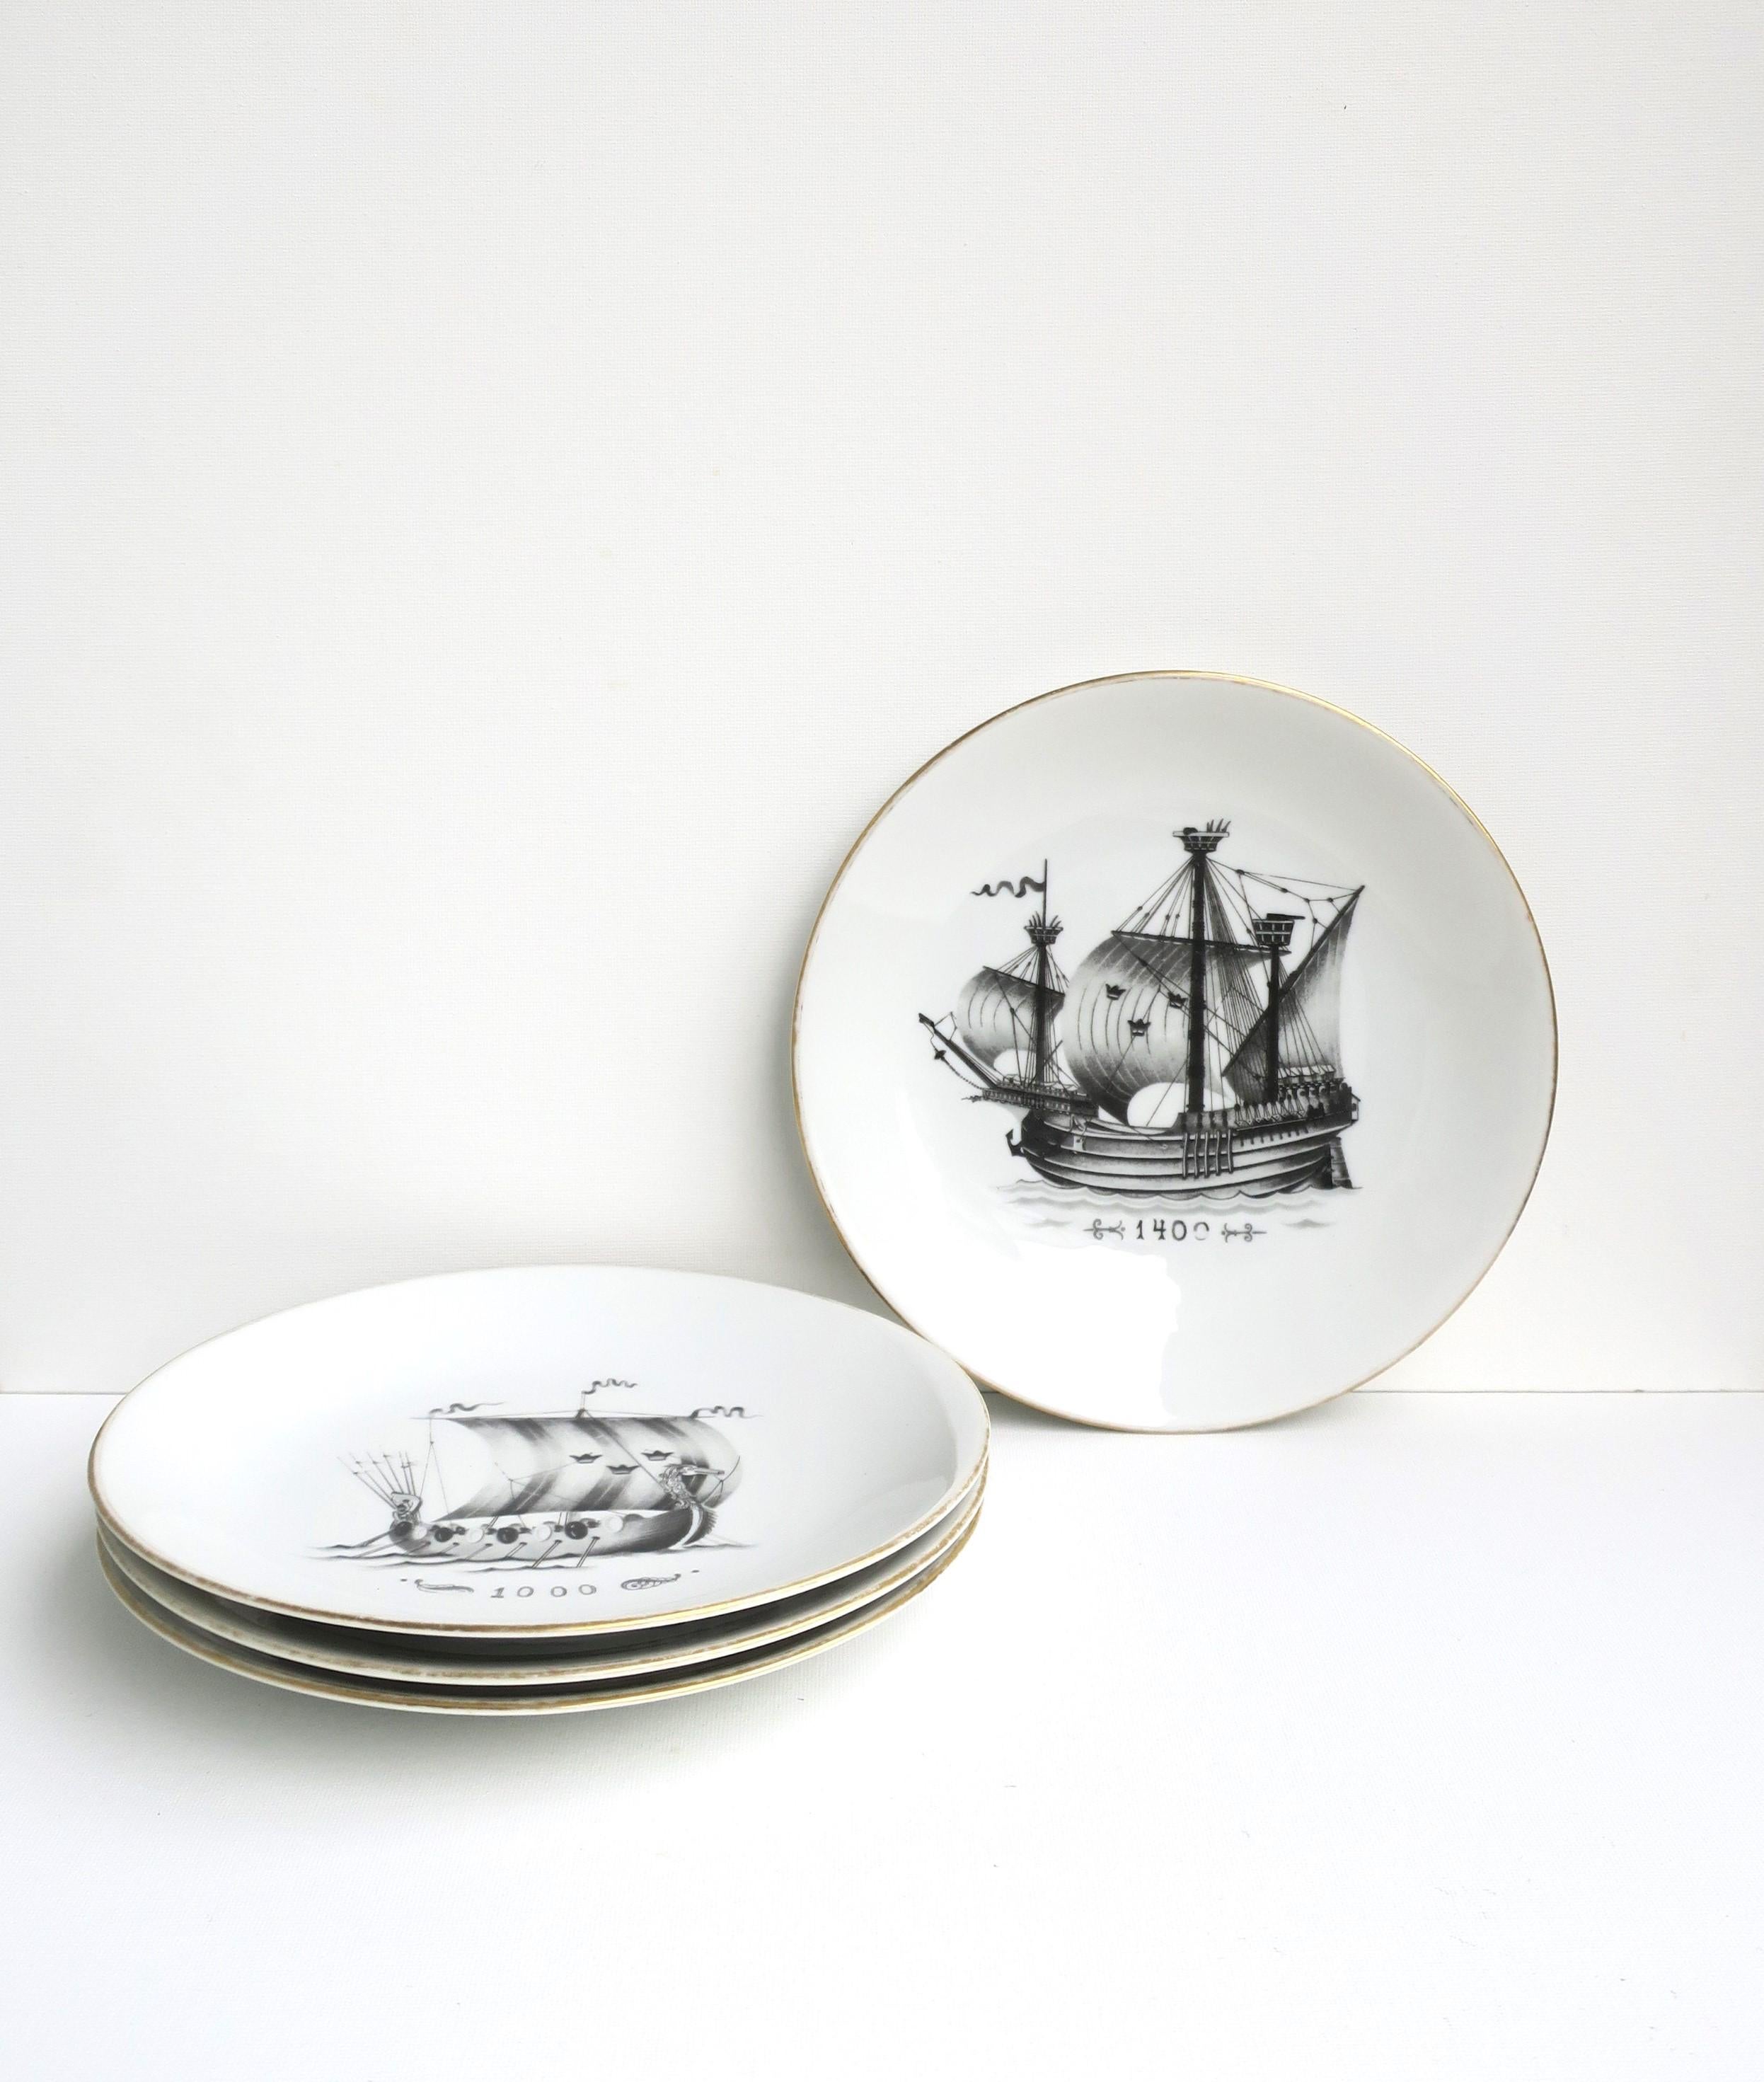 Un magnifique ensemble de quatre (4) assiettes en porcelaine nautique suédoise par Rörstrand, vers le 20e siècle, Suède. Les assiettes ont un thème nautique avec des voiliers anciens dans des tons noirs et anthracite sur un fond de porcelaine